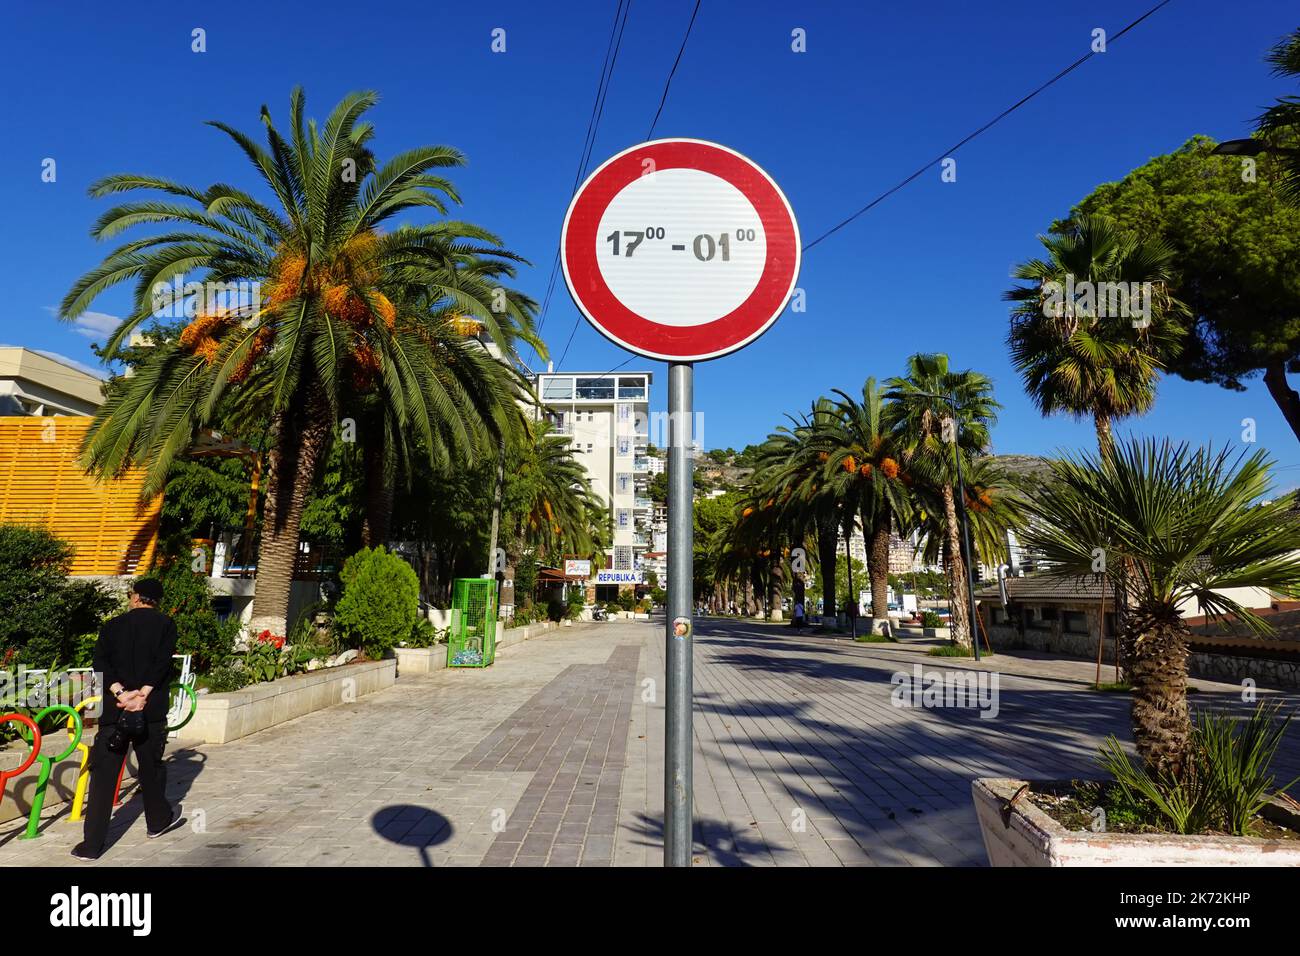 Cartello stradale senza ingresso, Promenade, Saranda, Repubblica di Albania Foto Stock